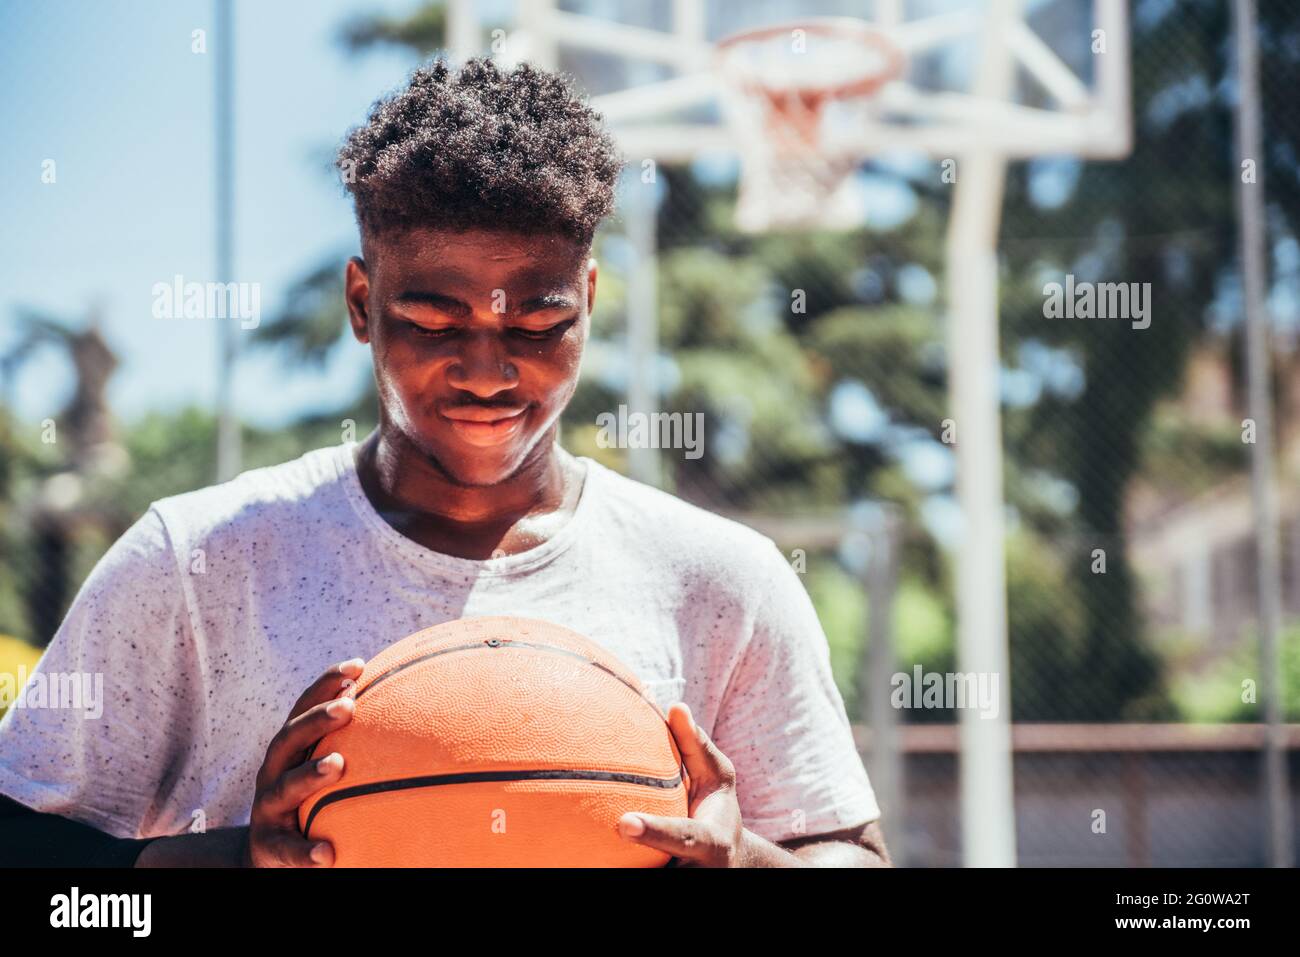 Porträt eines schwarzen afroamerikanischen Jungen, der auf einem städtischen Basketballfeld einen Basketball gegen seine Brust hält. Stockfoto